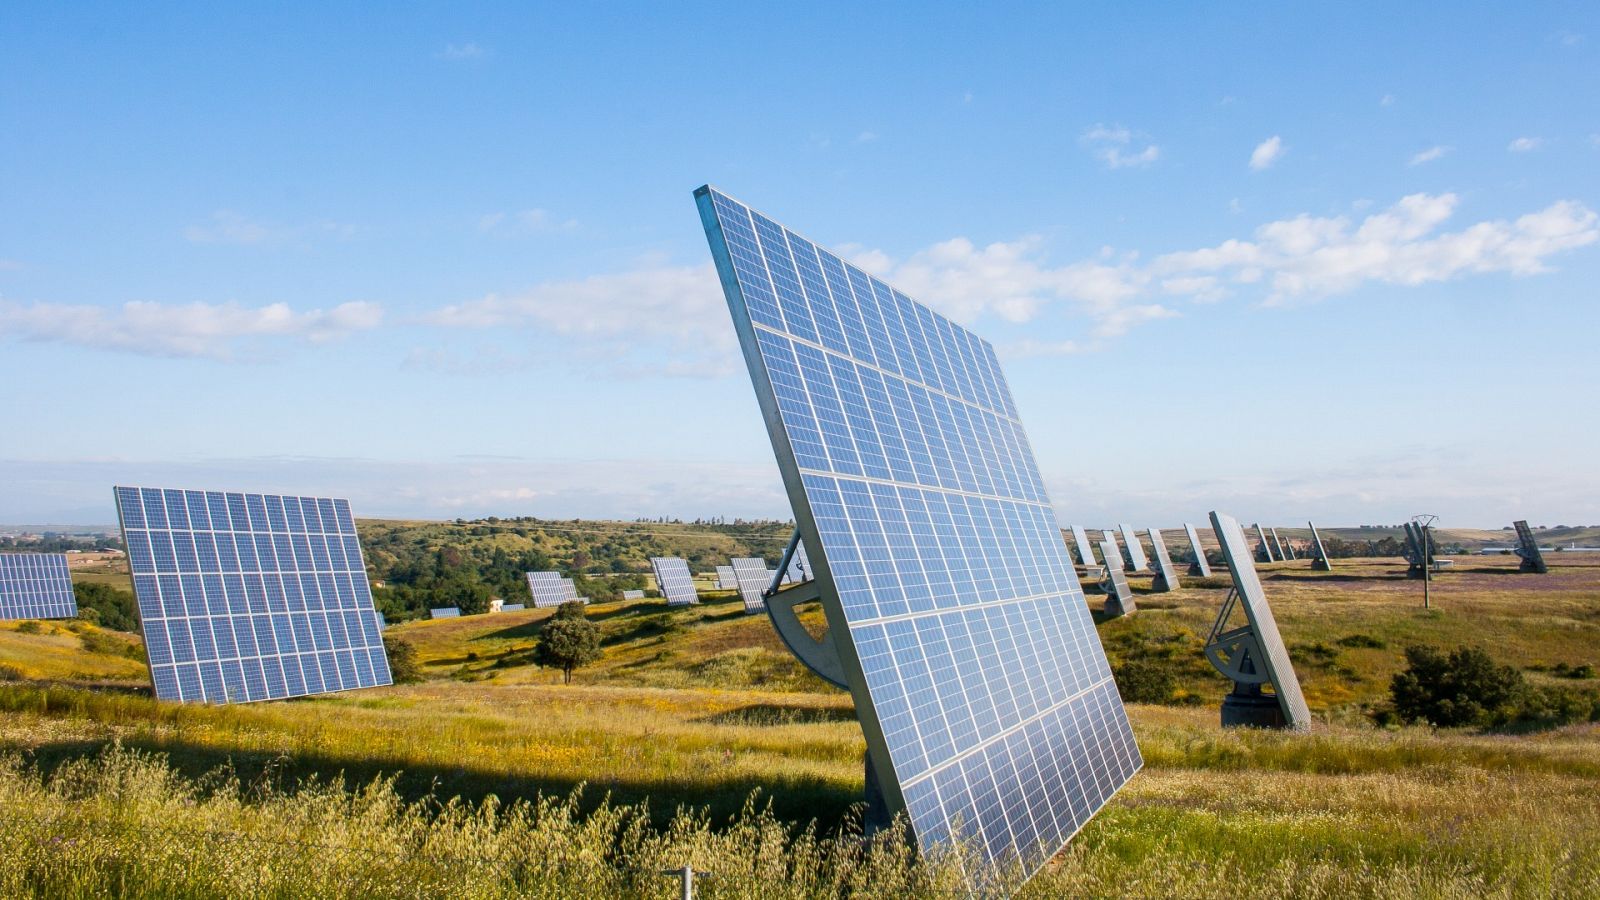  La energía solar supone el 60% del aumento anual de todas las renovables, según la AIE